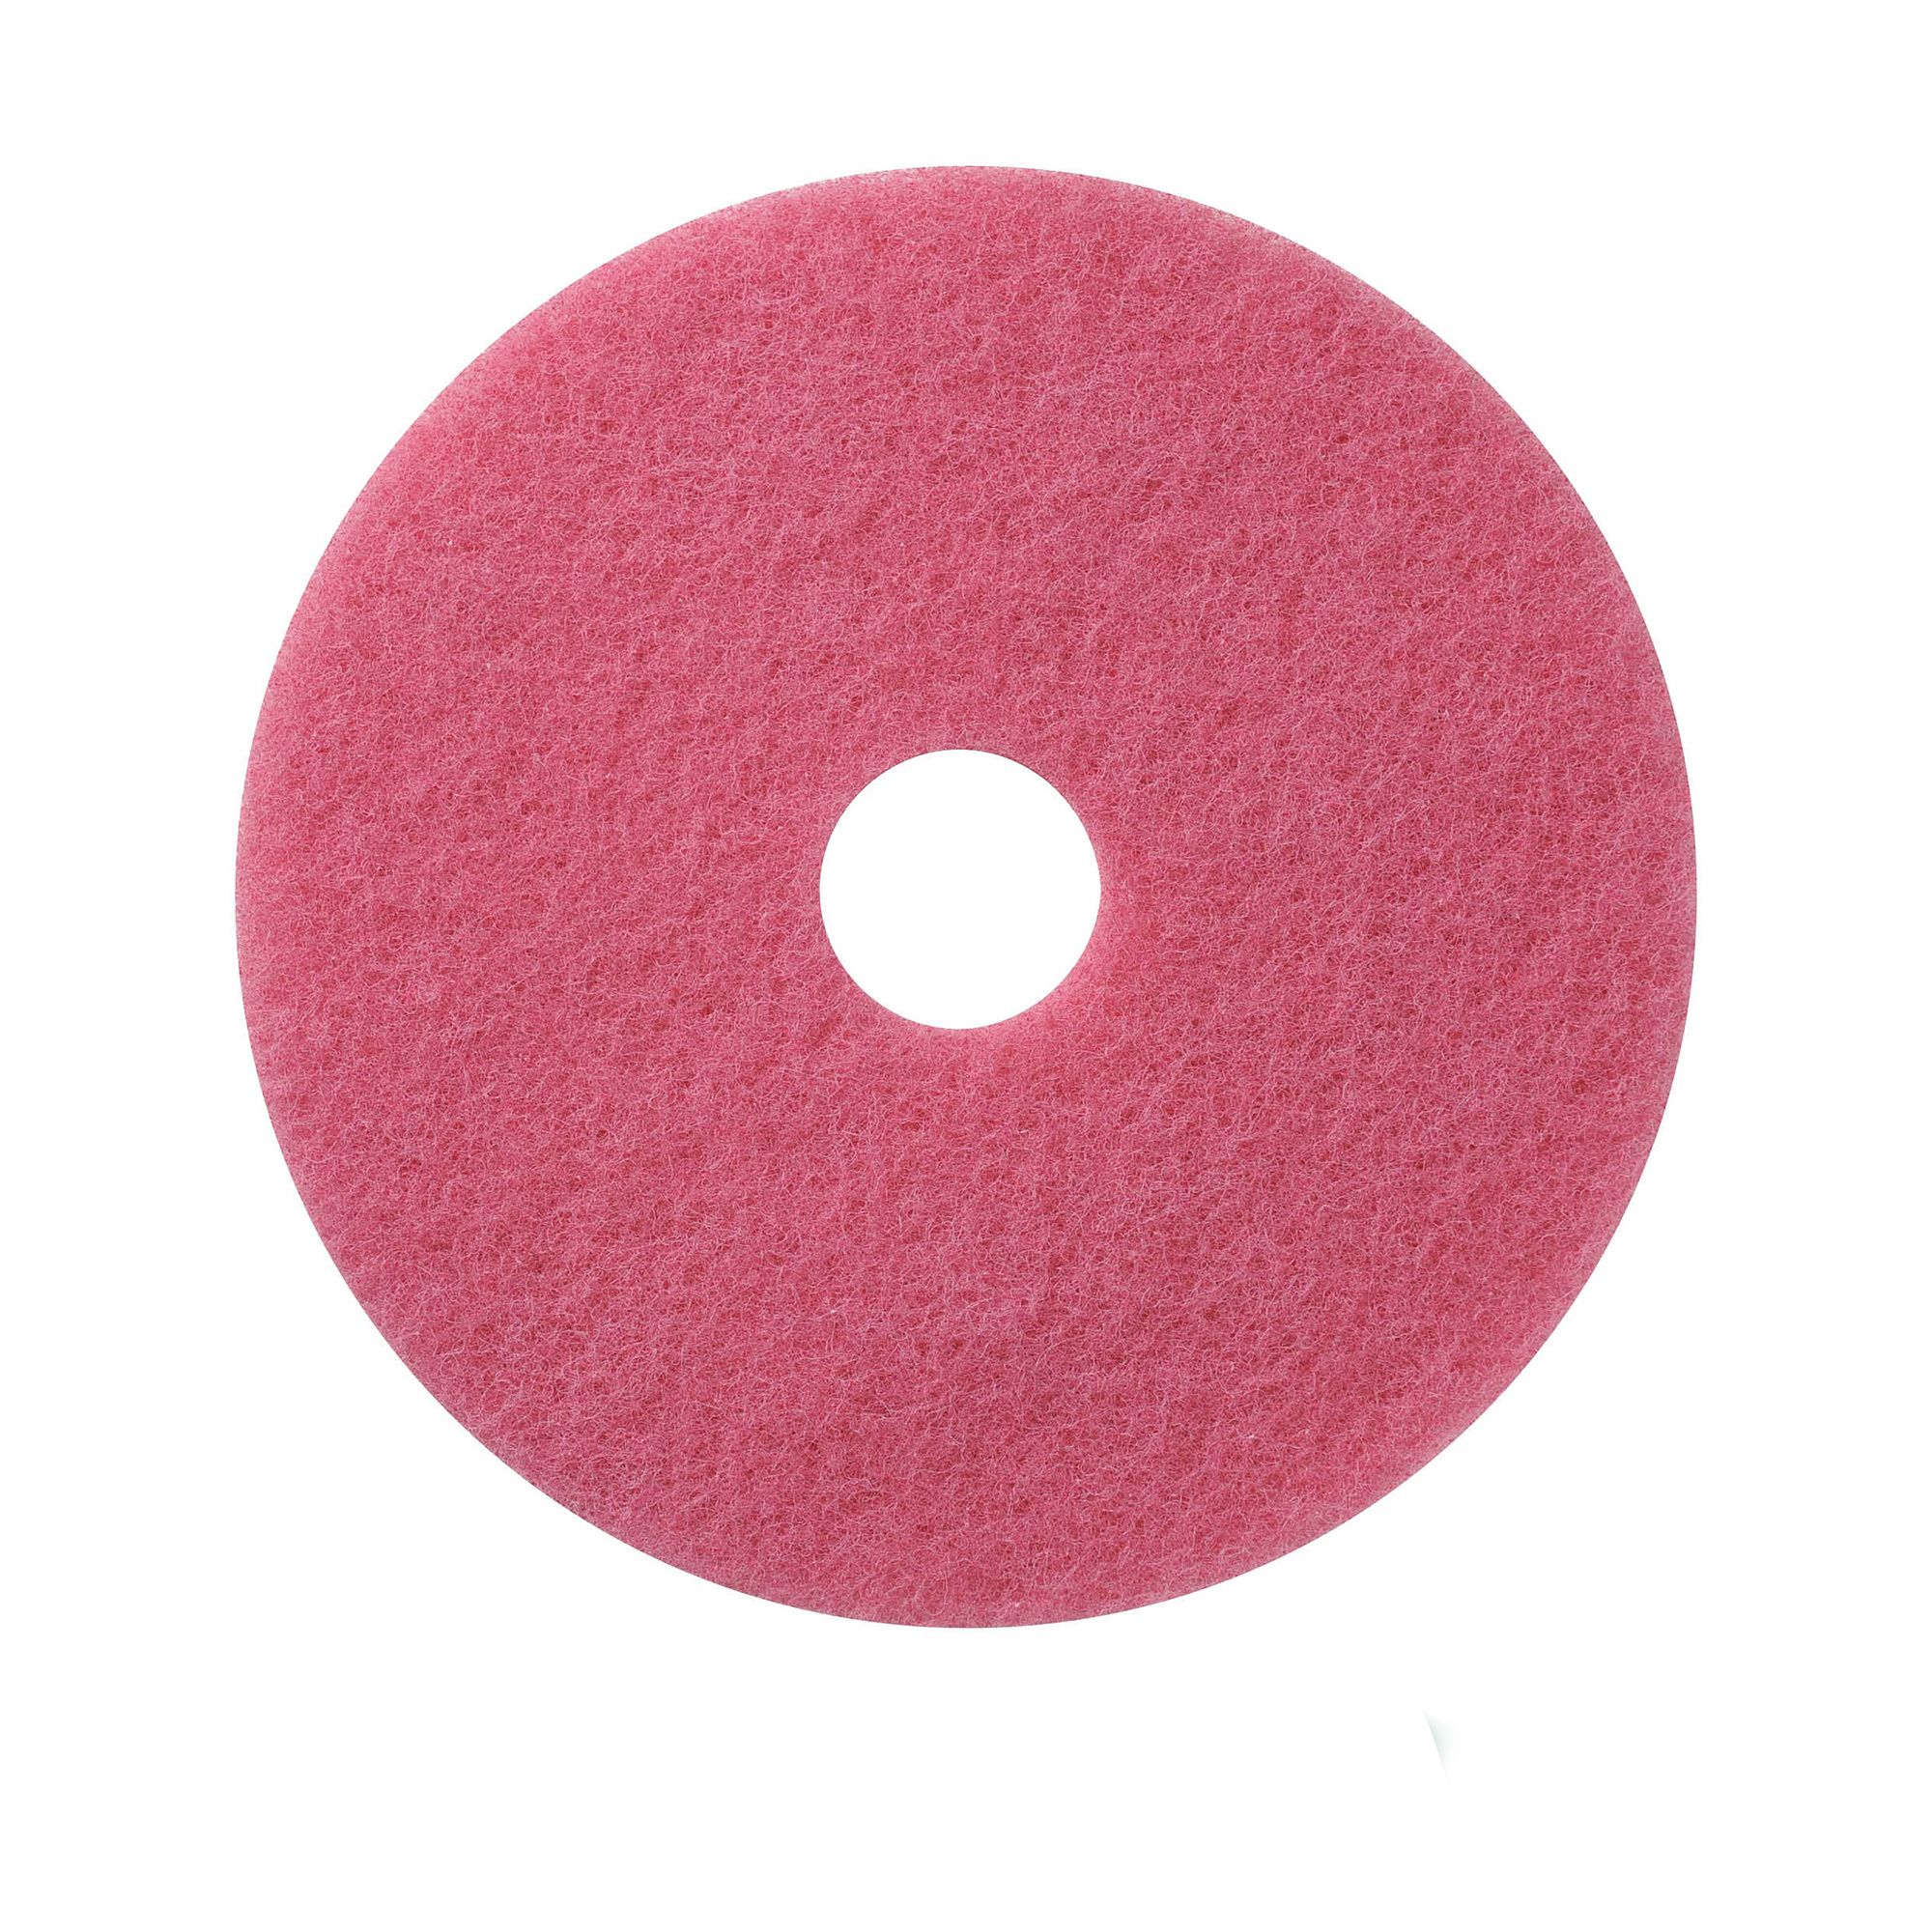 NuPad roze (schrobben), per 5 stuks, 14 inch / 355 mm